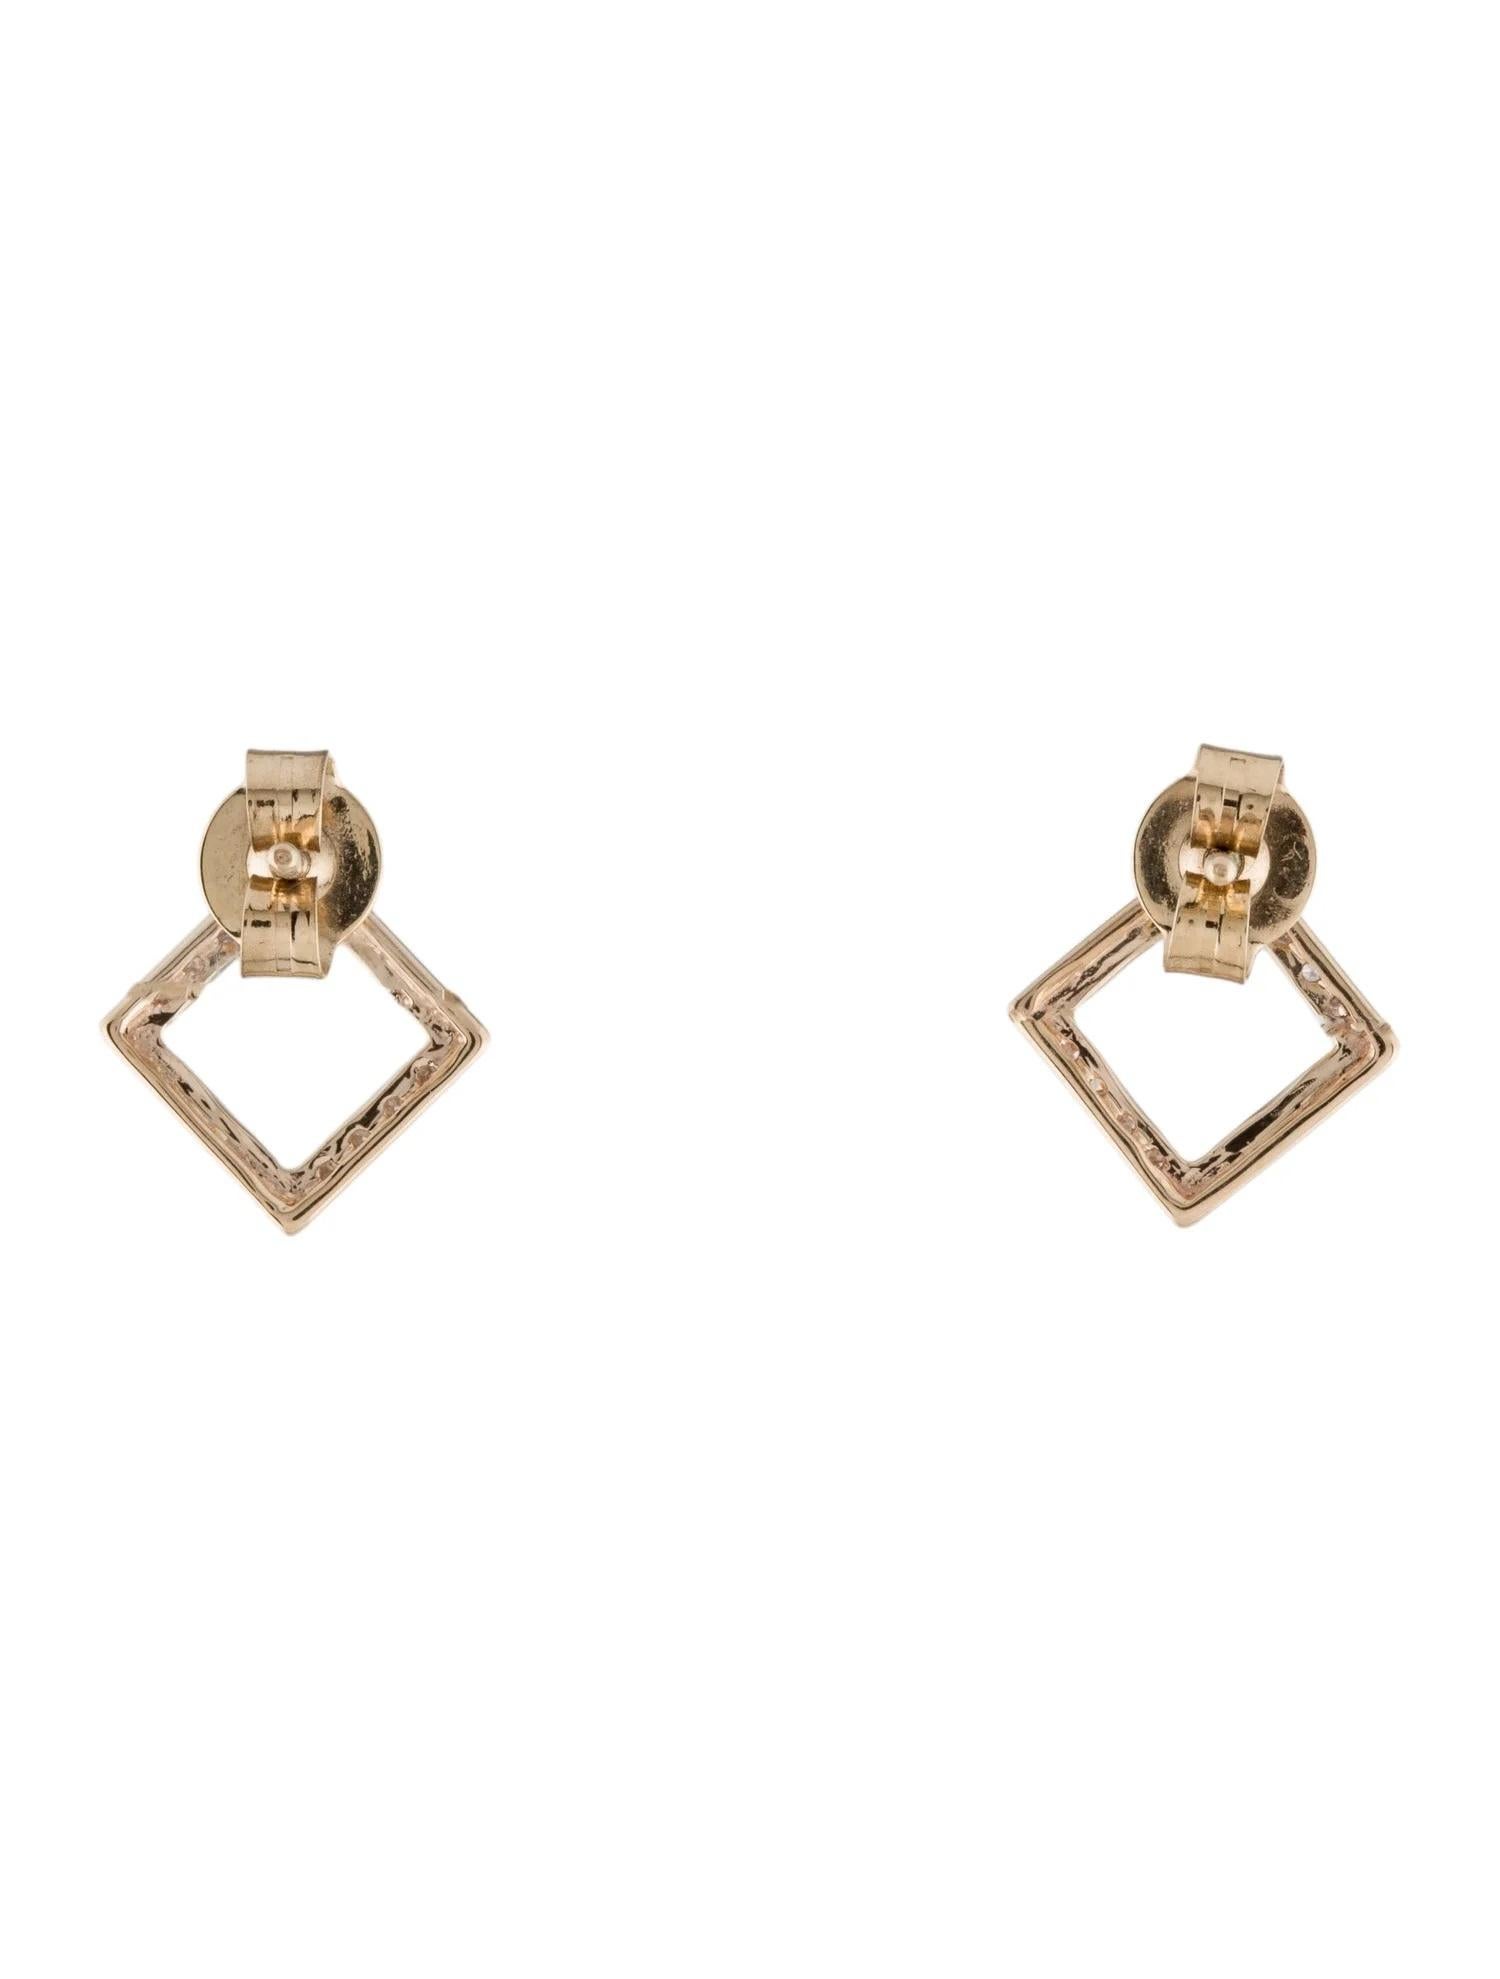 Single Cut 14K Diamond Open Square Stud Earrings, 0.12ctw For Sale